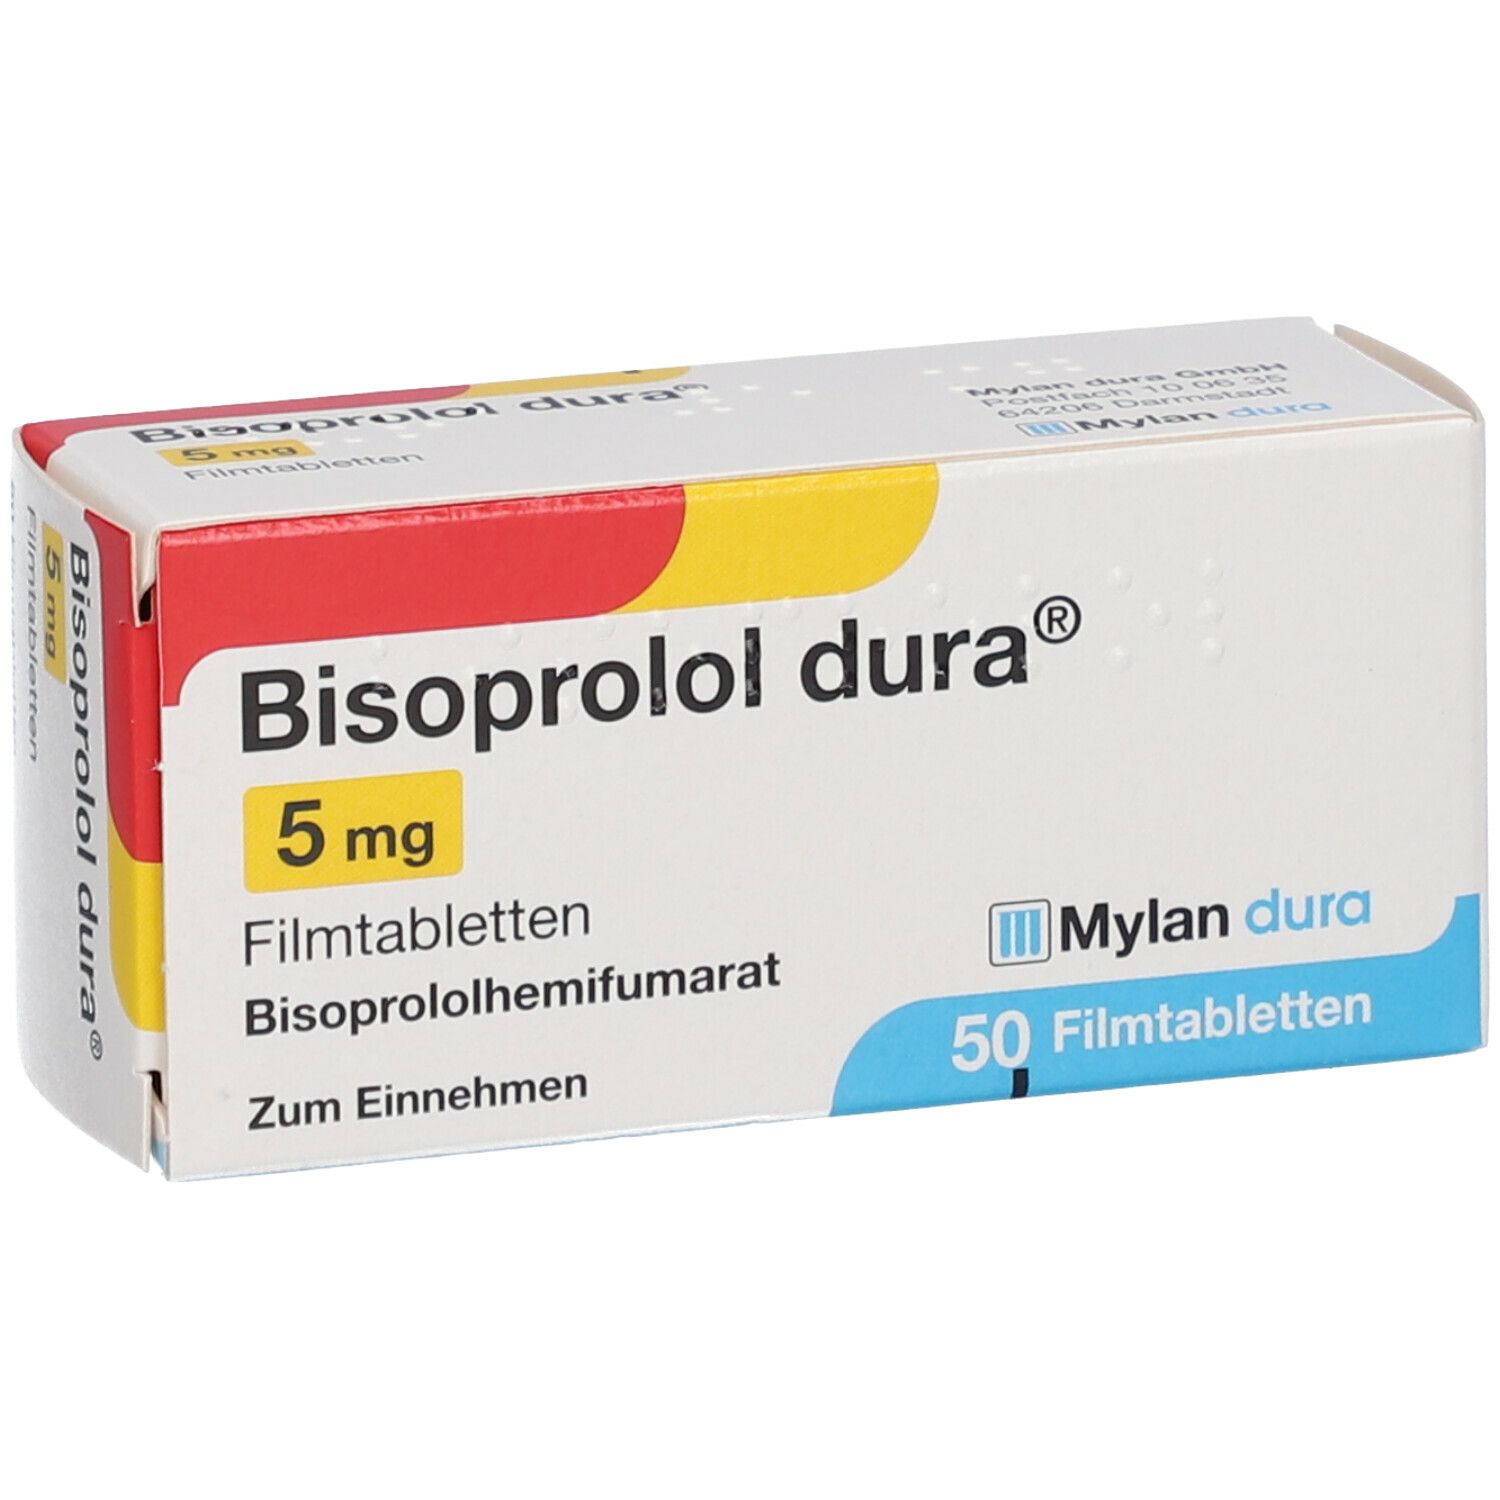 Bisoprolol dura® 5 mg